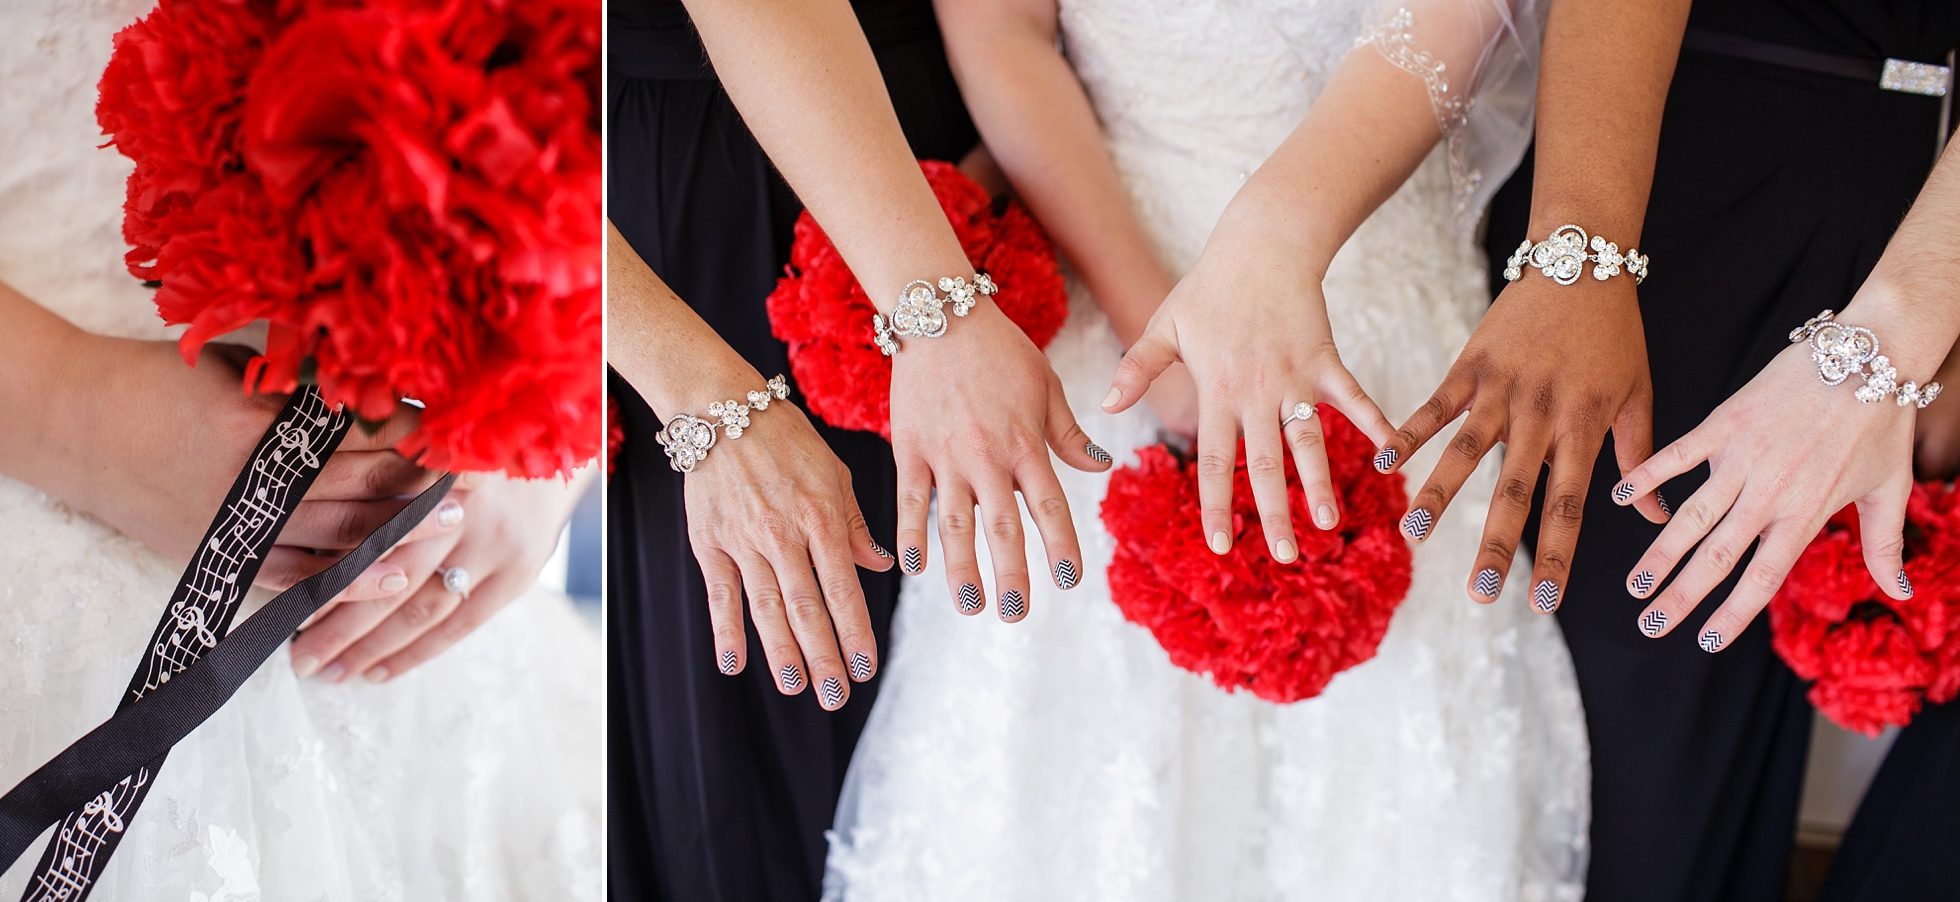 matching bracelets details bridesmaids